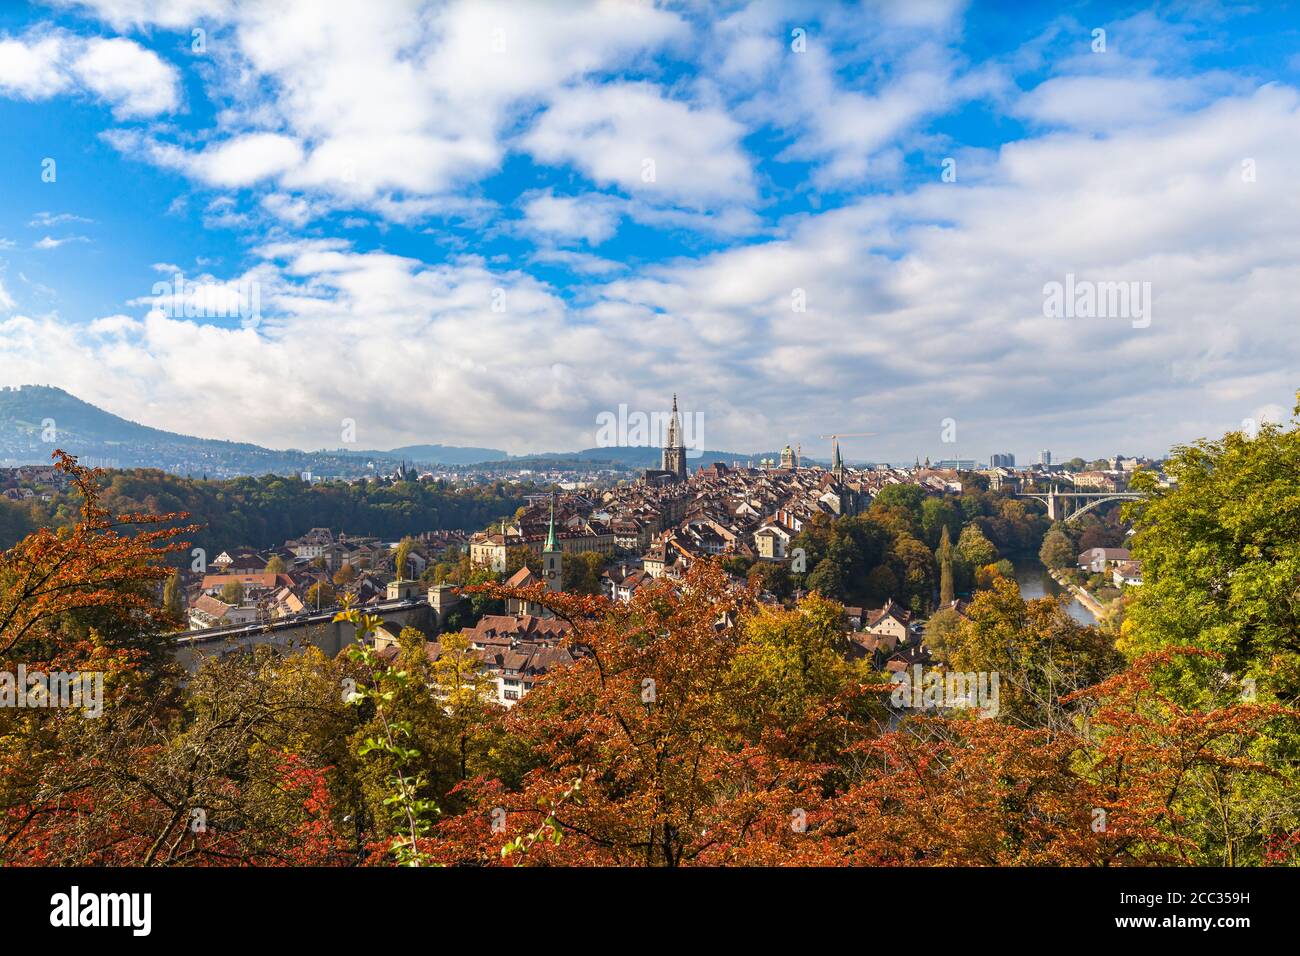 Vue imprenable sur la vieille ville de Berne avec la cathédrale de Berne Minster (Münster) et la rivière Aare, depuis Rosengarten le jour ensoleillé de l'automne avec le bleu sk Banque D'Images